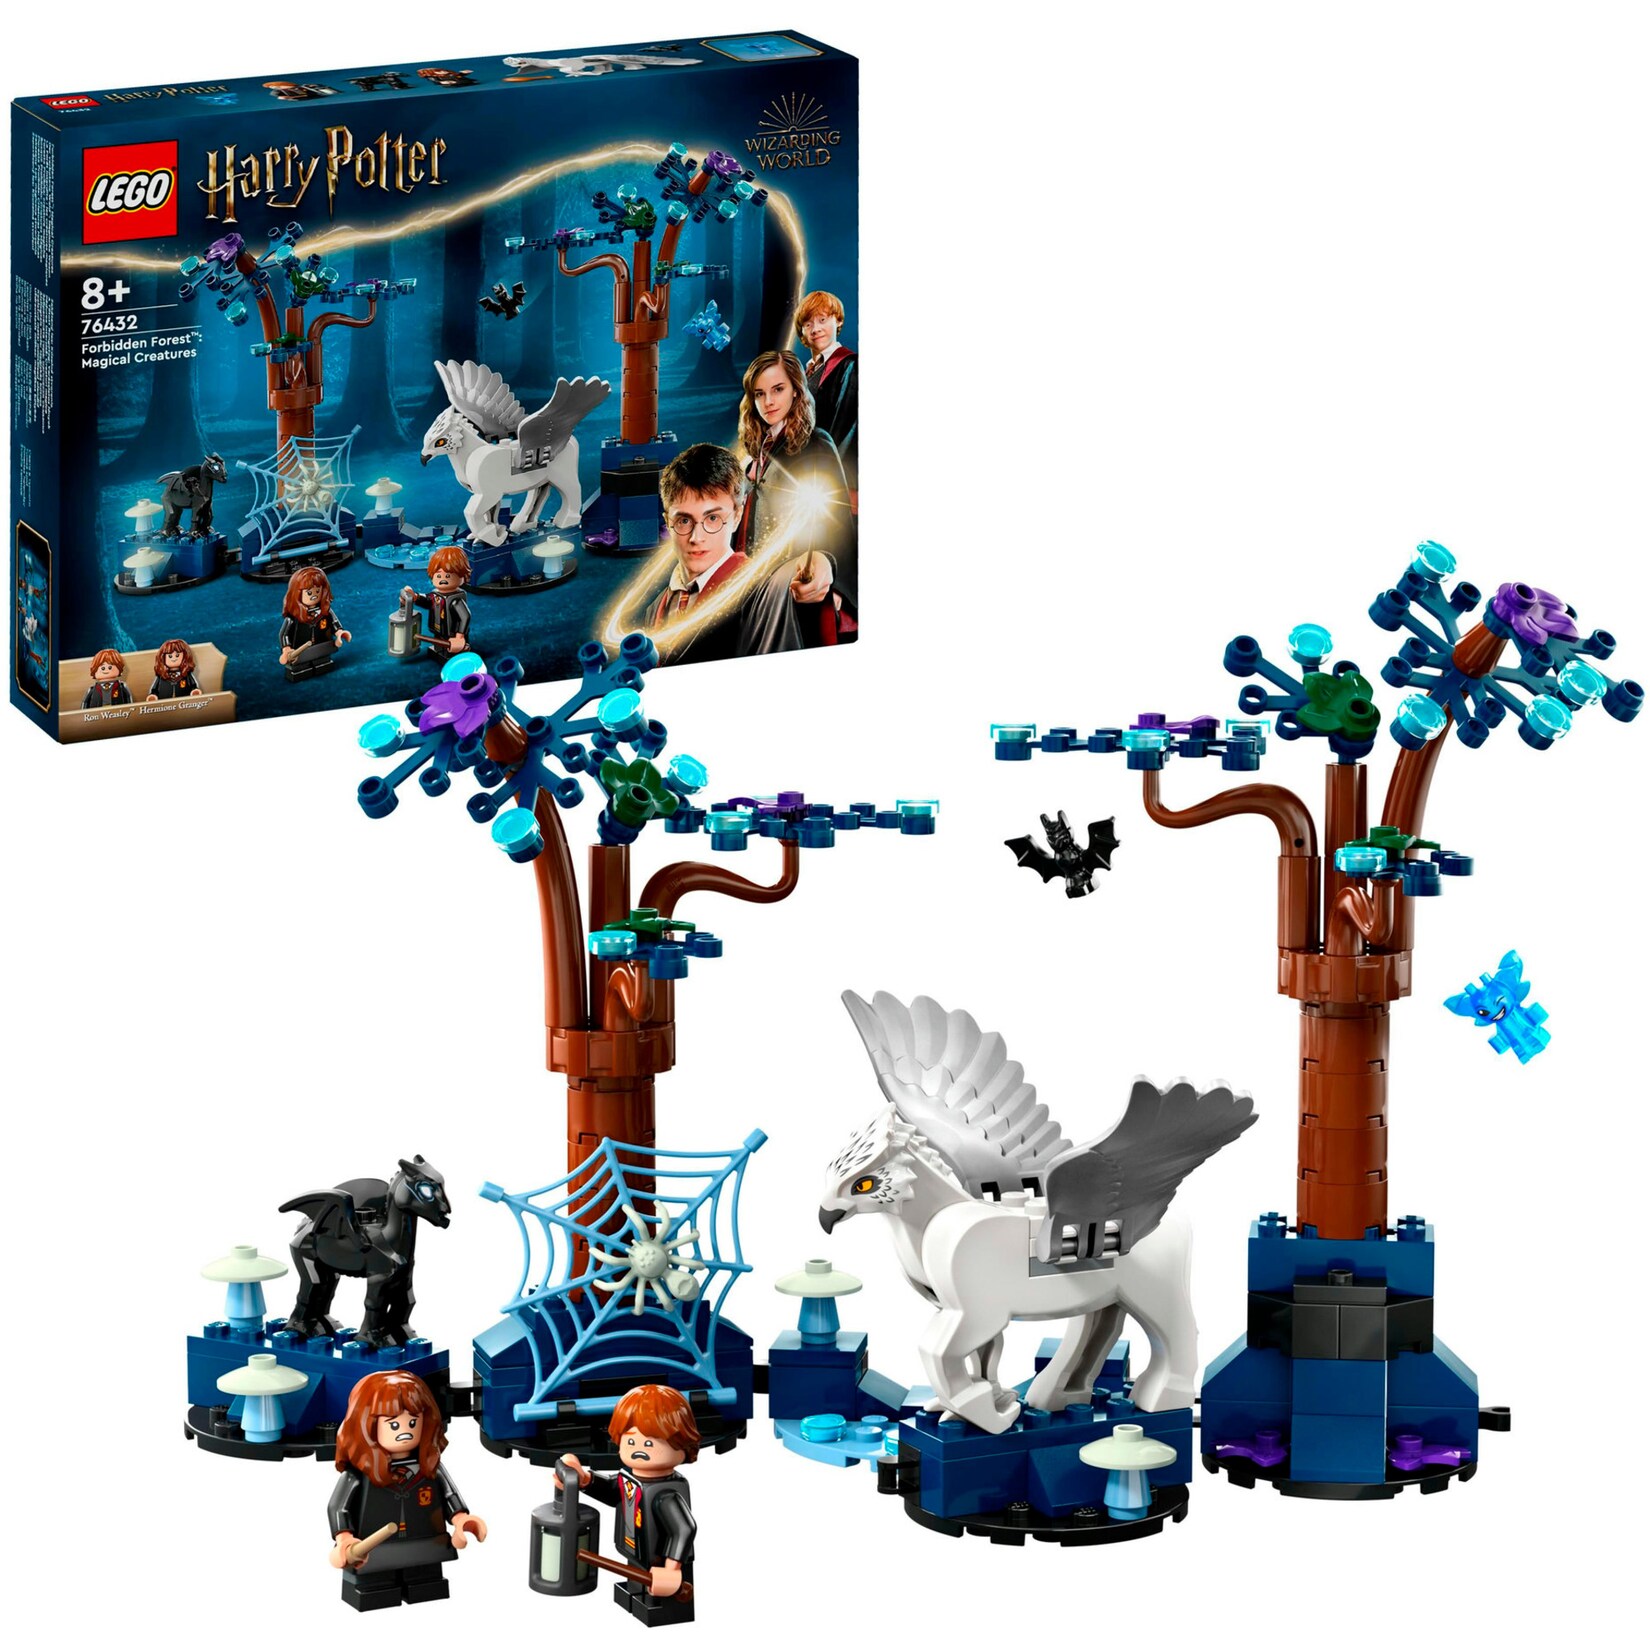 LEGO Konstruktionsspielzeug Harry Potter Der verbotene Wald: Magische Wesen